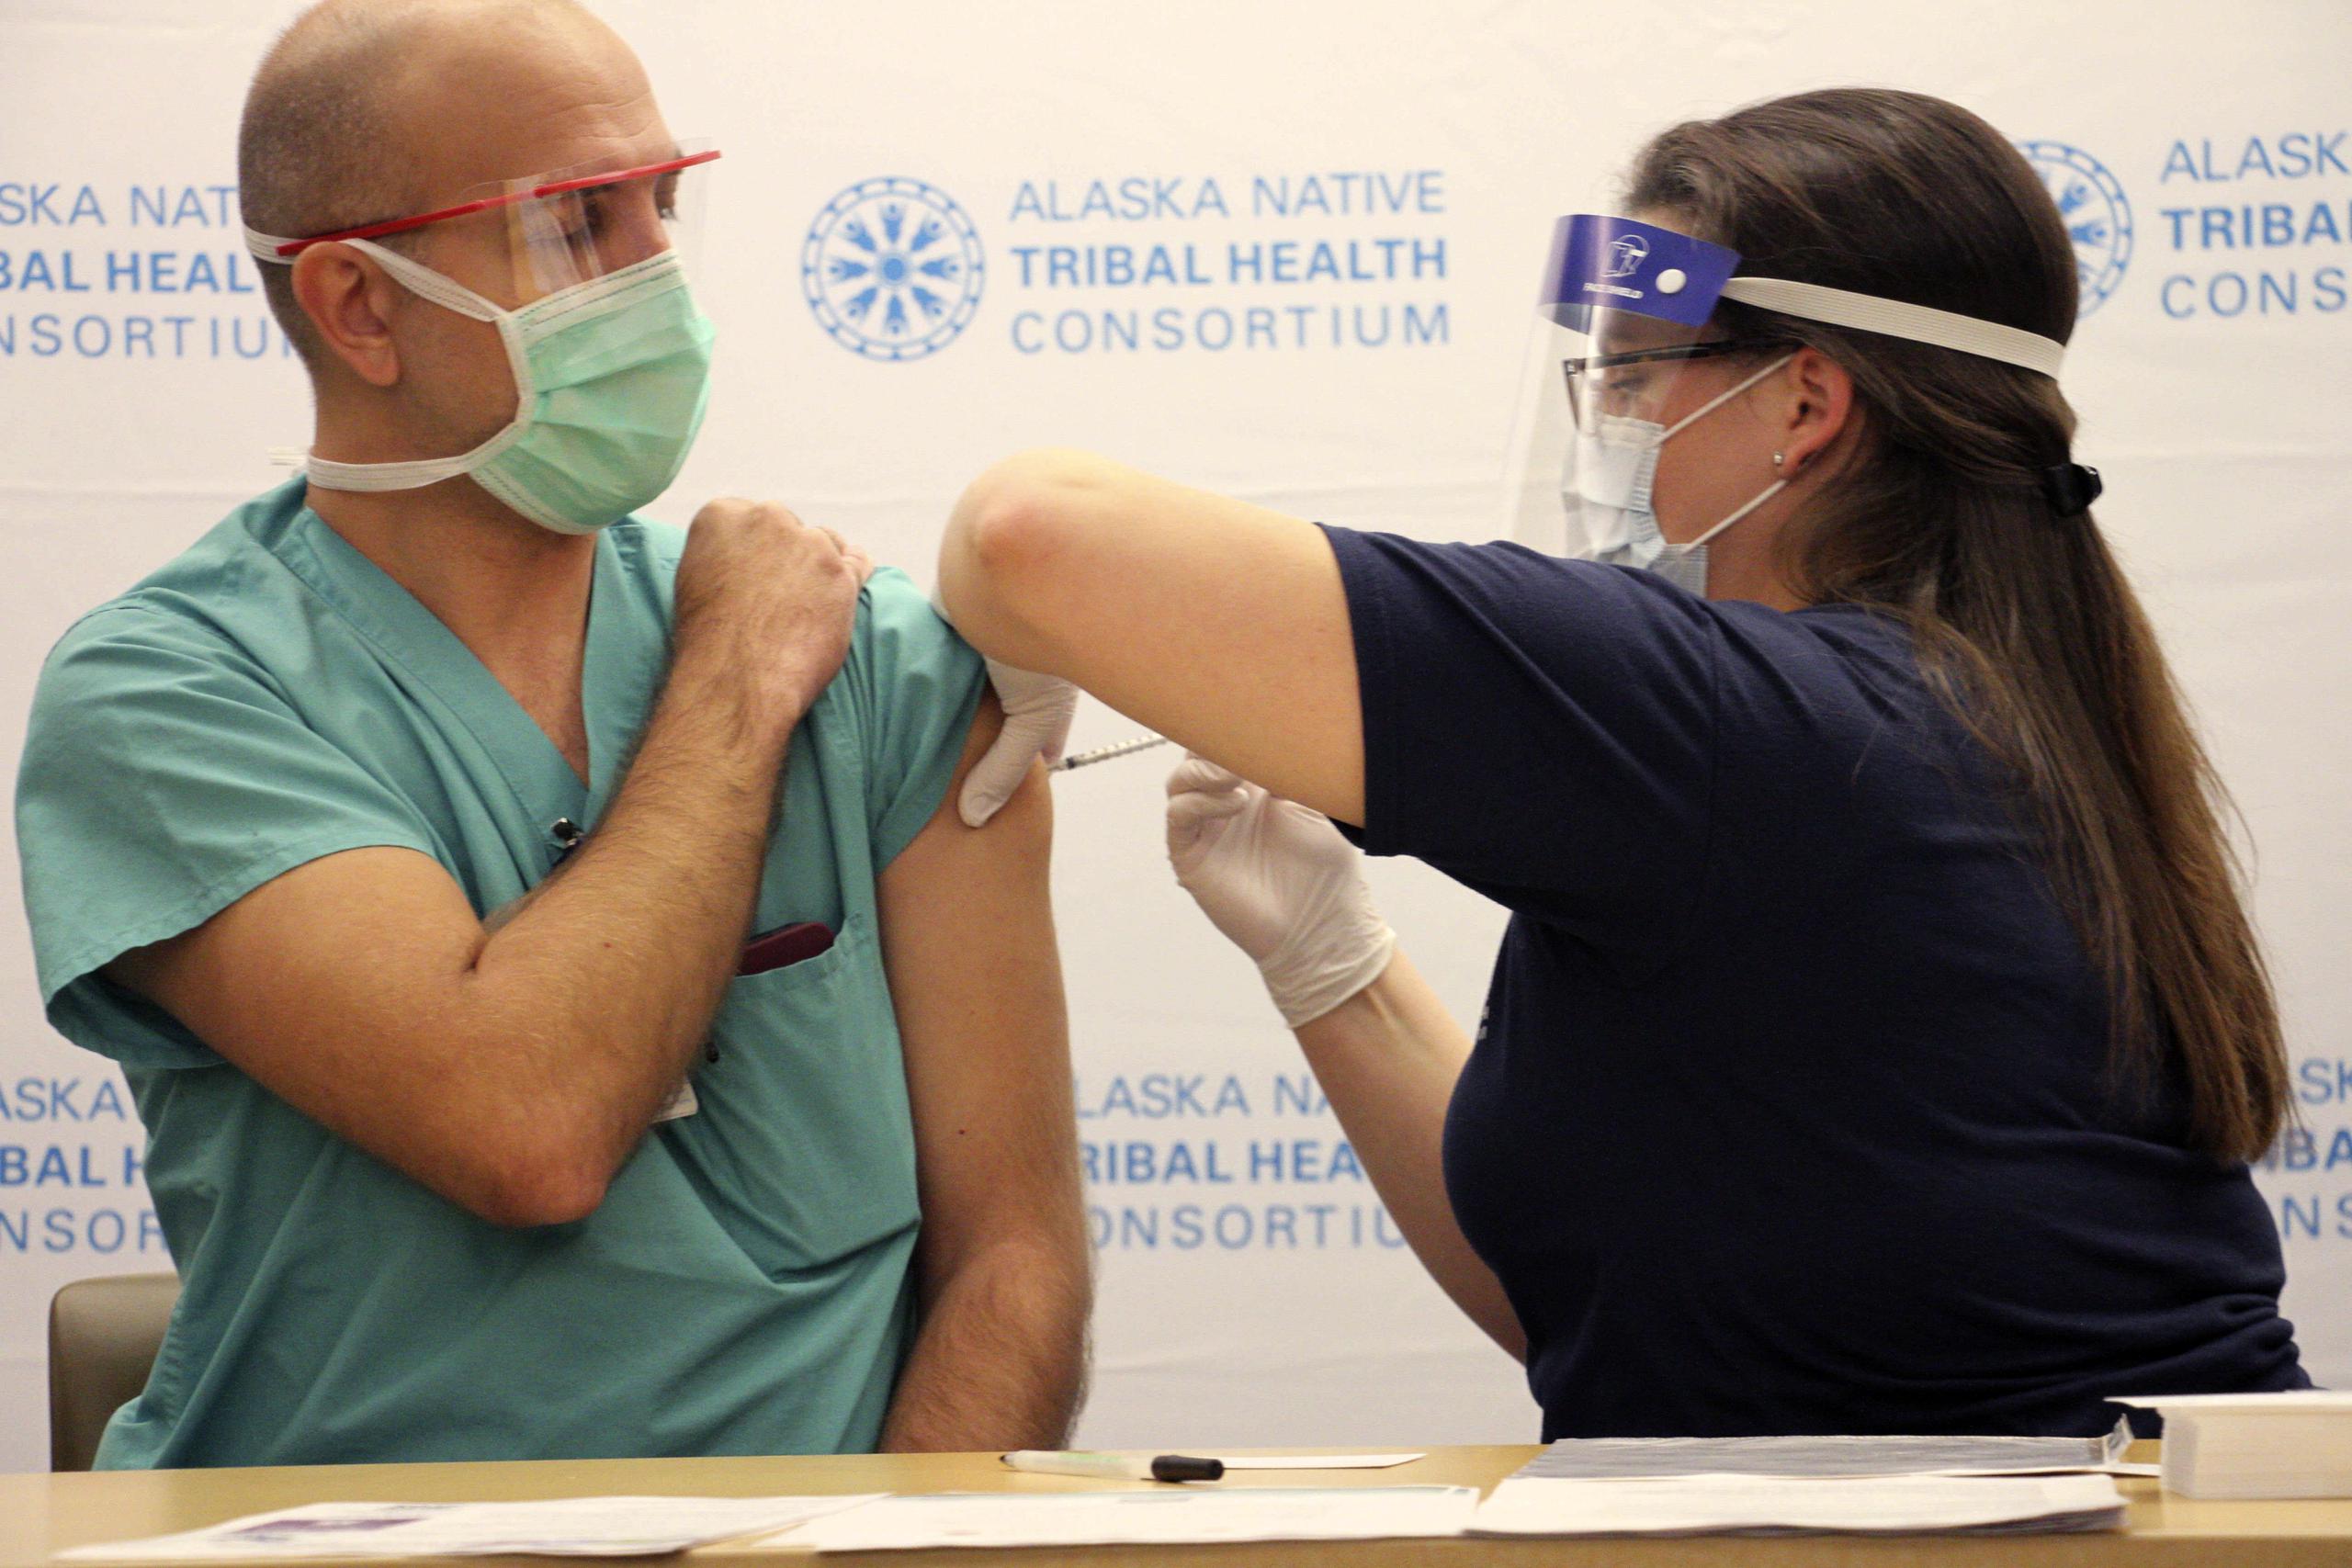 El doctor David Zielke, un neumólogo especializado en terapia intensiva, recibe una de las dos dosis de la vacuna contra el COVID-19 de manos de la enfermera Emily Schubert, en el Alaska Native Medical Center, en Anchorage, Alaska.